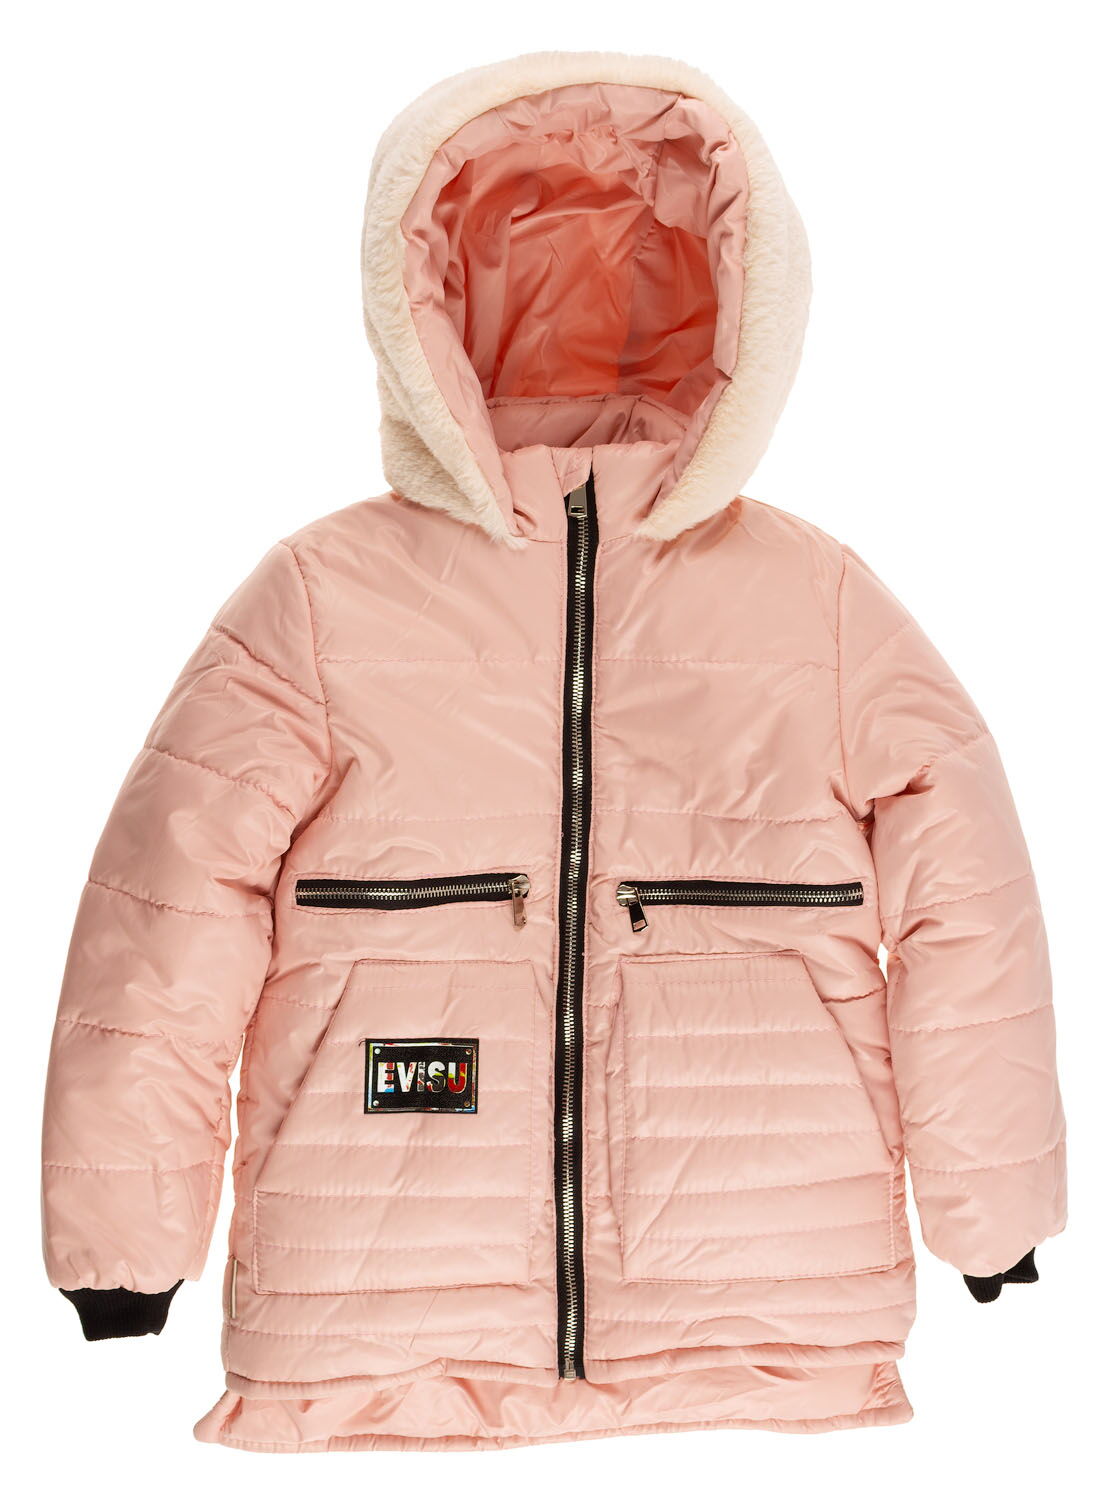 Куртка зимняя для девочки Одягайко пудра 20134 - цена